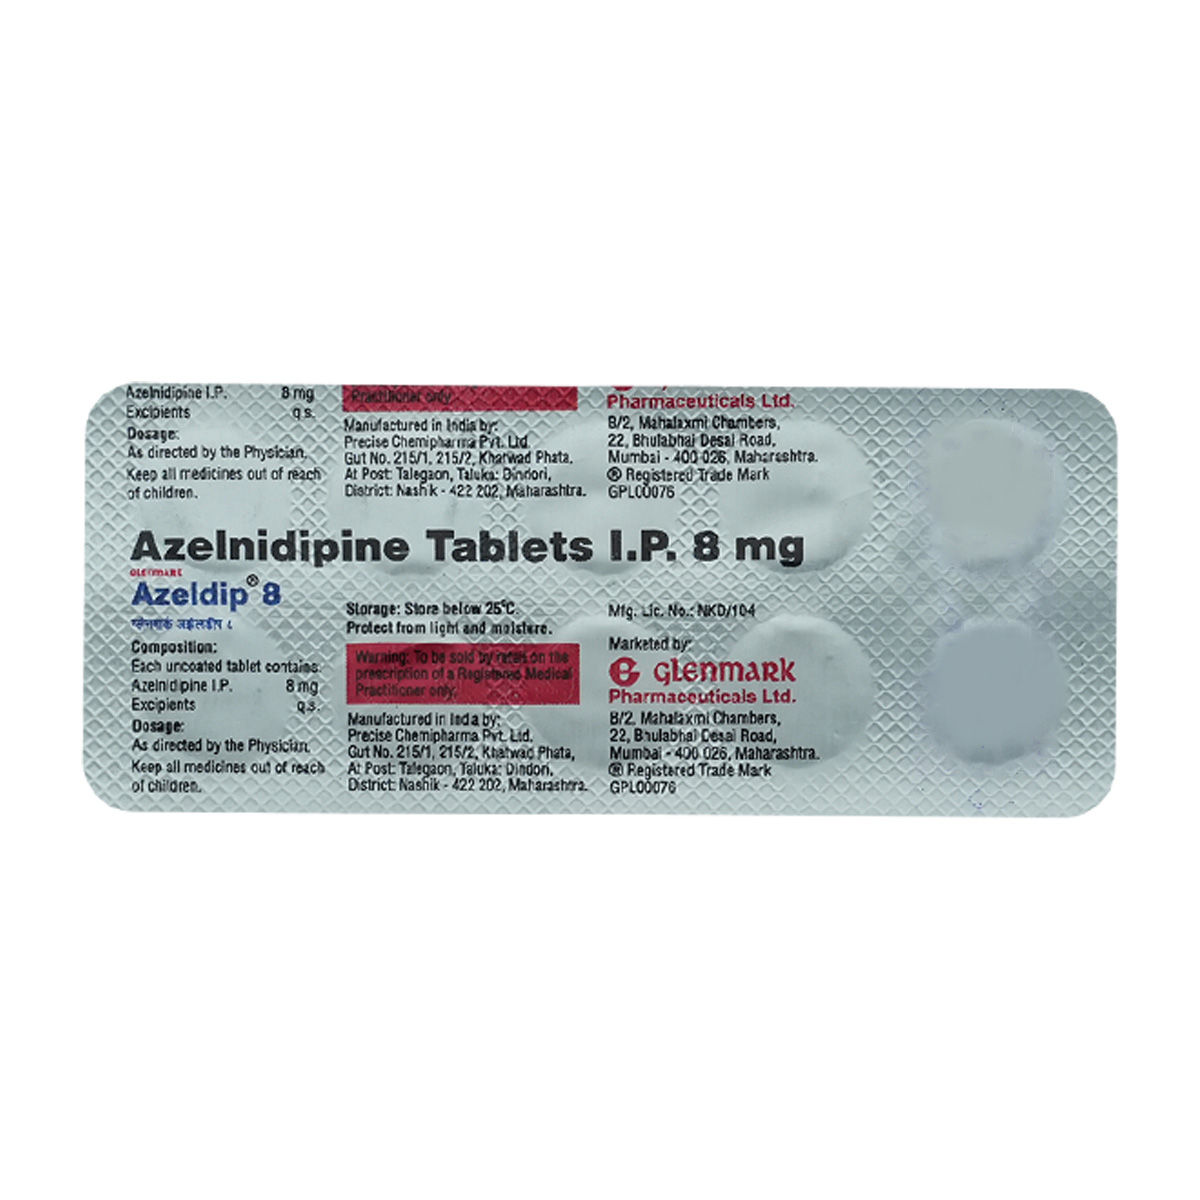 Buy Azeldip 8 mg Tablet 10's Online